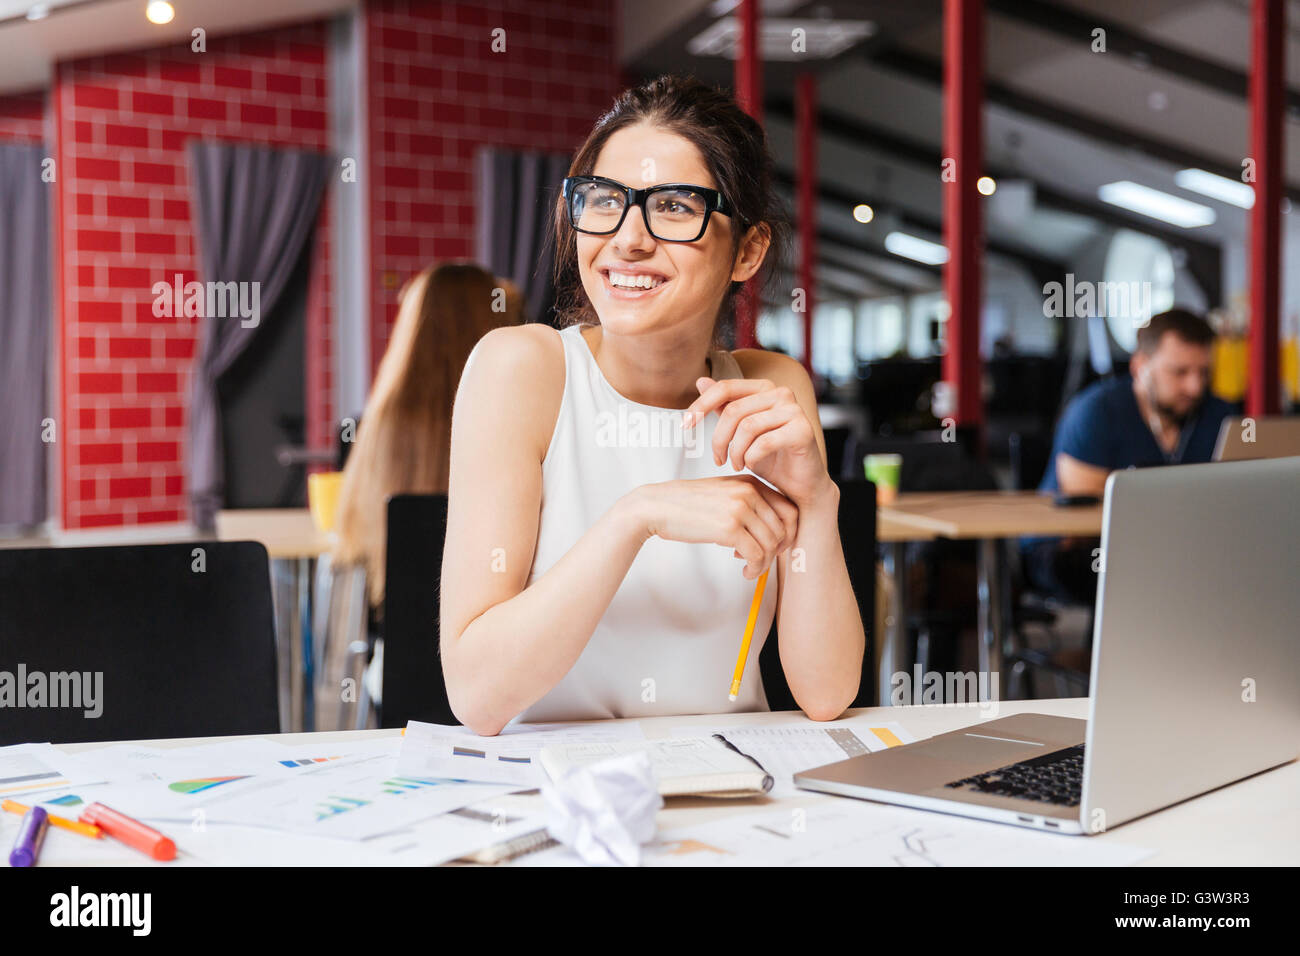 Porträt des Lächelns hübsche junge Geschäftsfrau in Gläsern sitzen am Arbeitsplatz Stockfoto